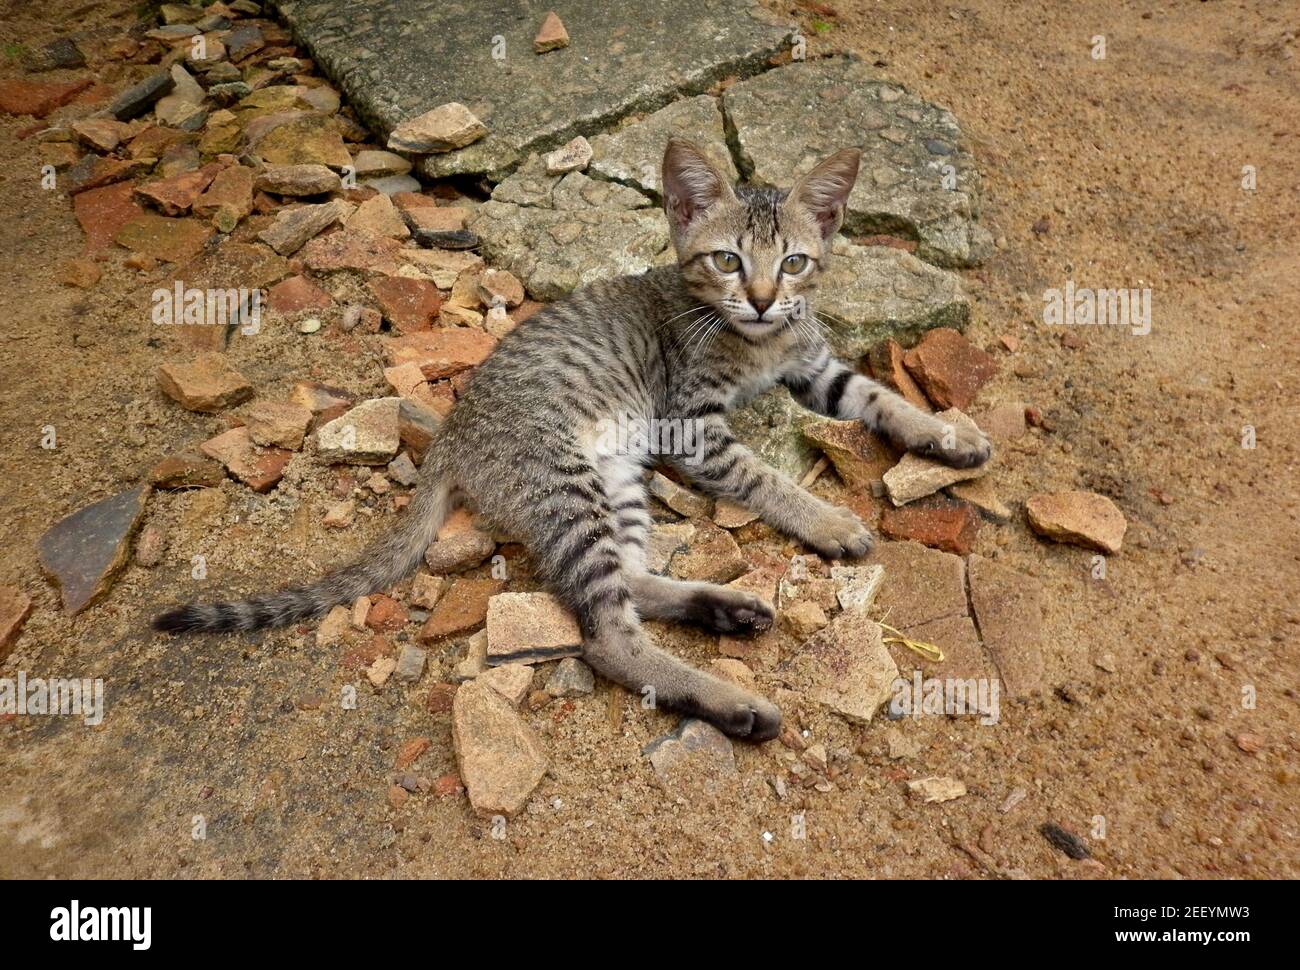 Un piccolo gattino su un terreno roccioso mentre si guarda curiosamente Foto Stock